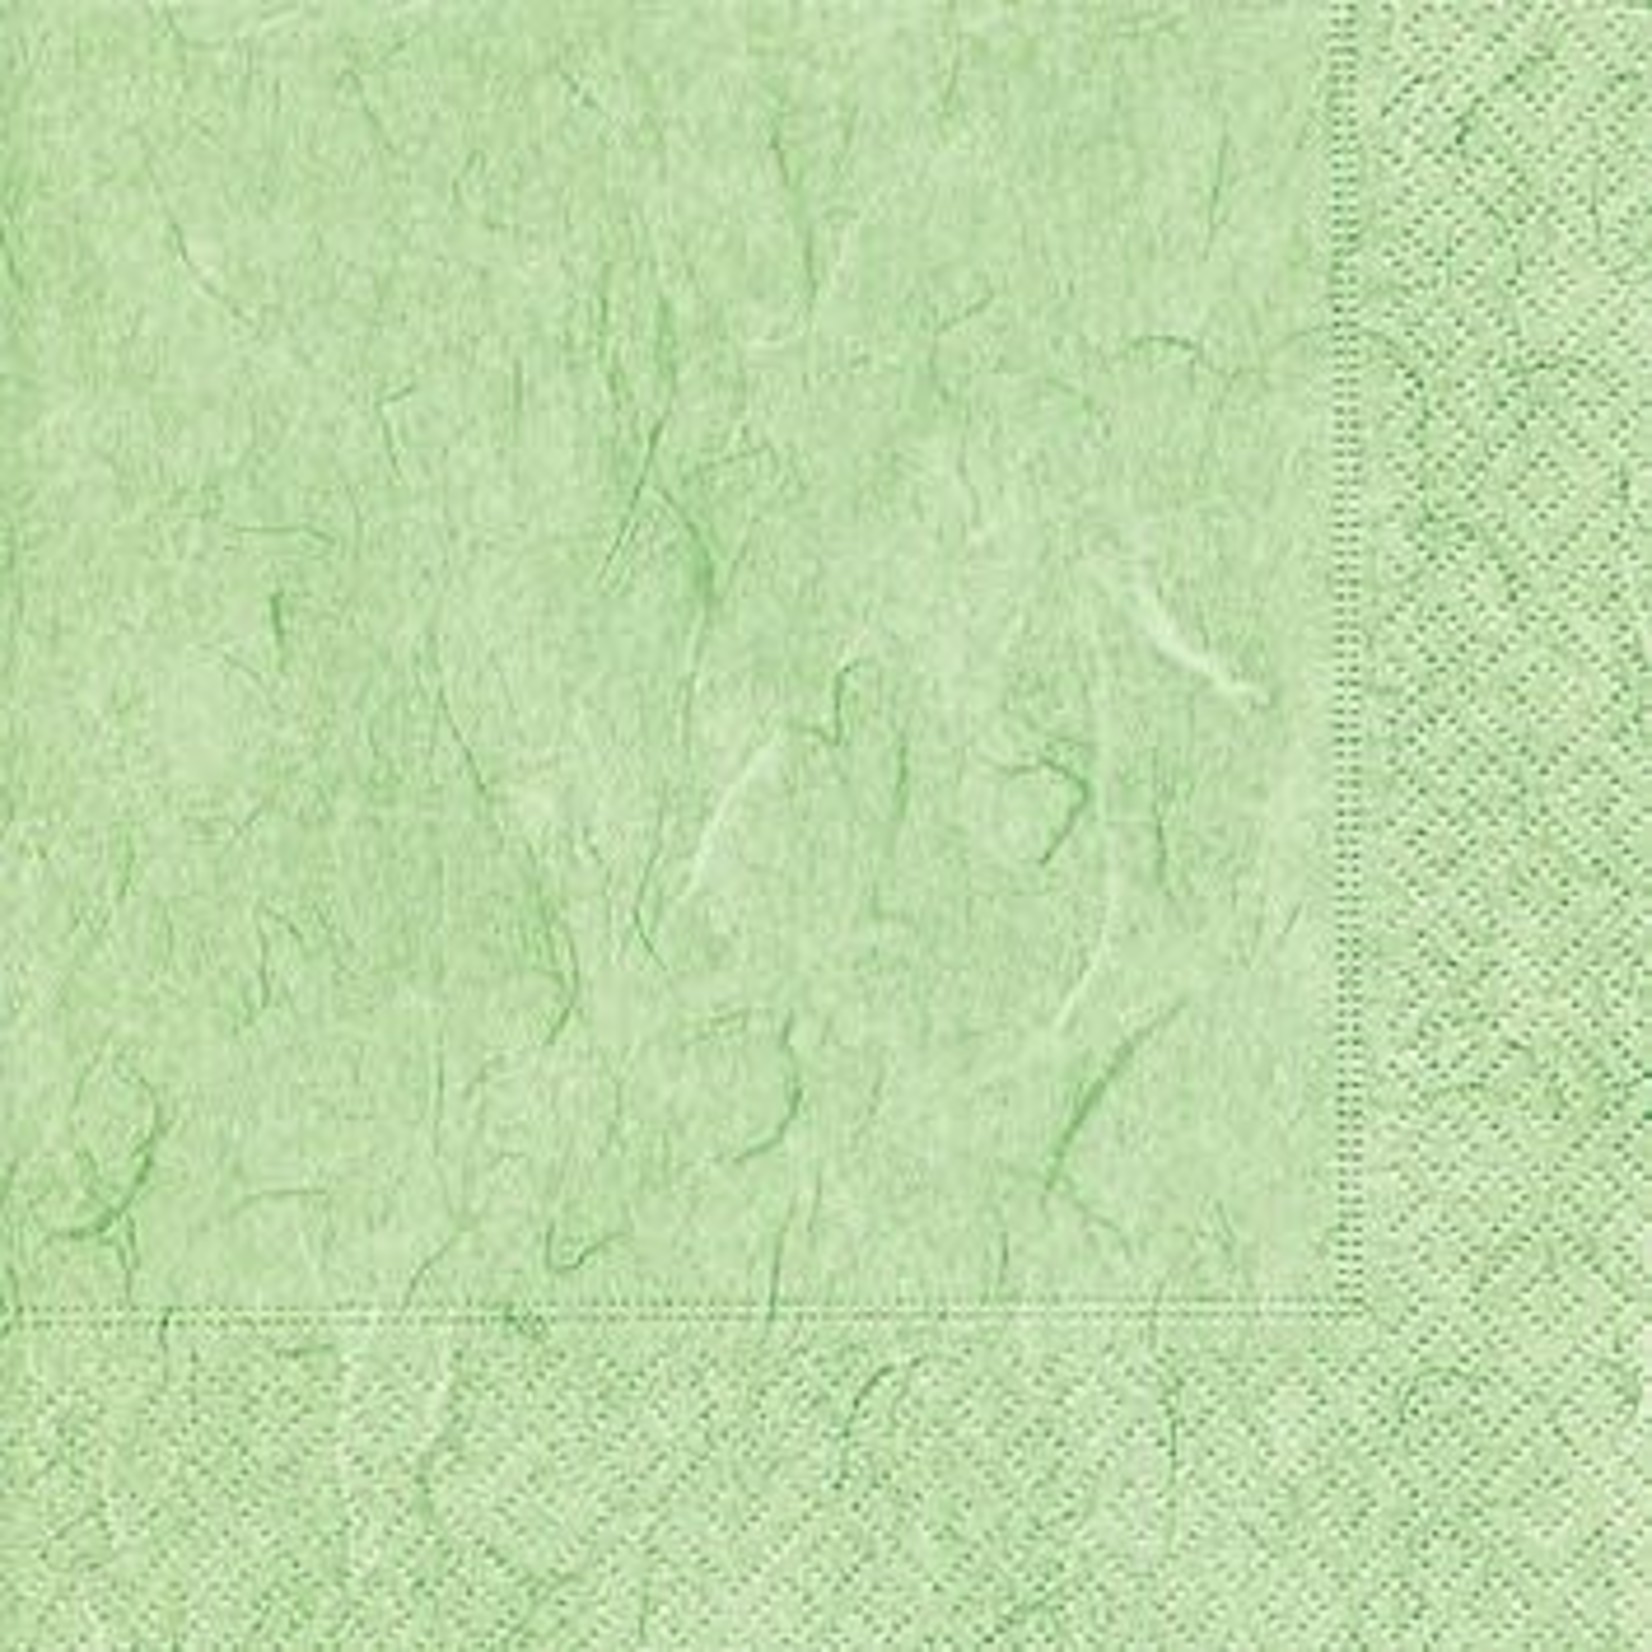 Pure Mint Green Serviettes